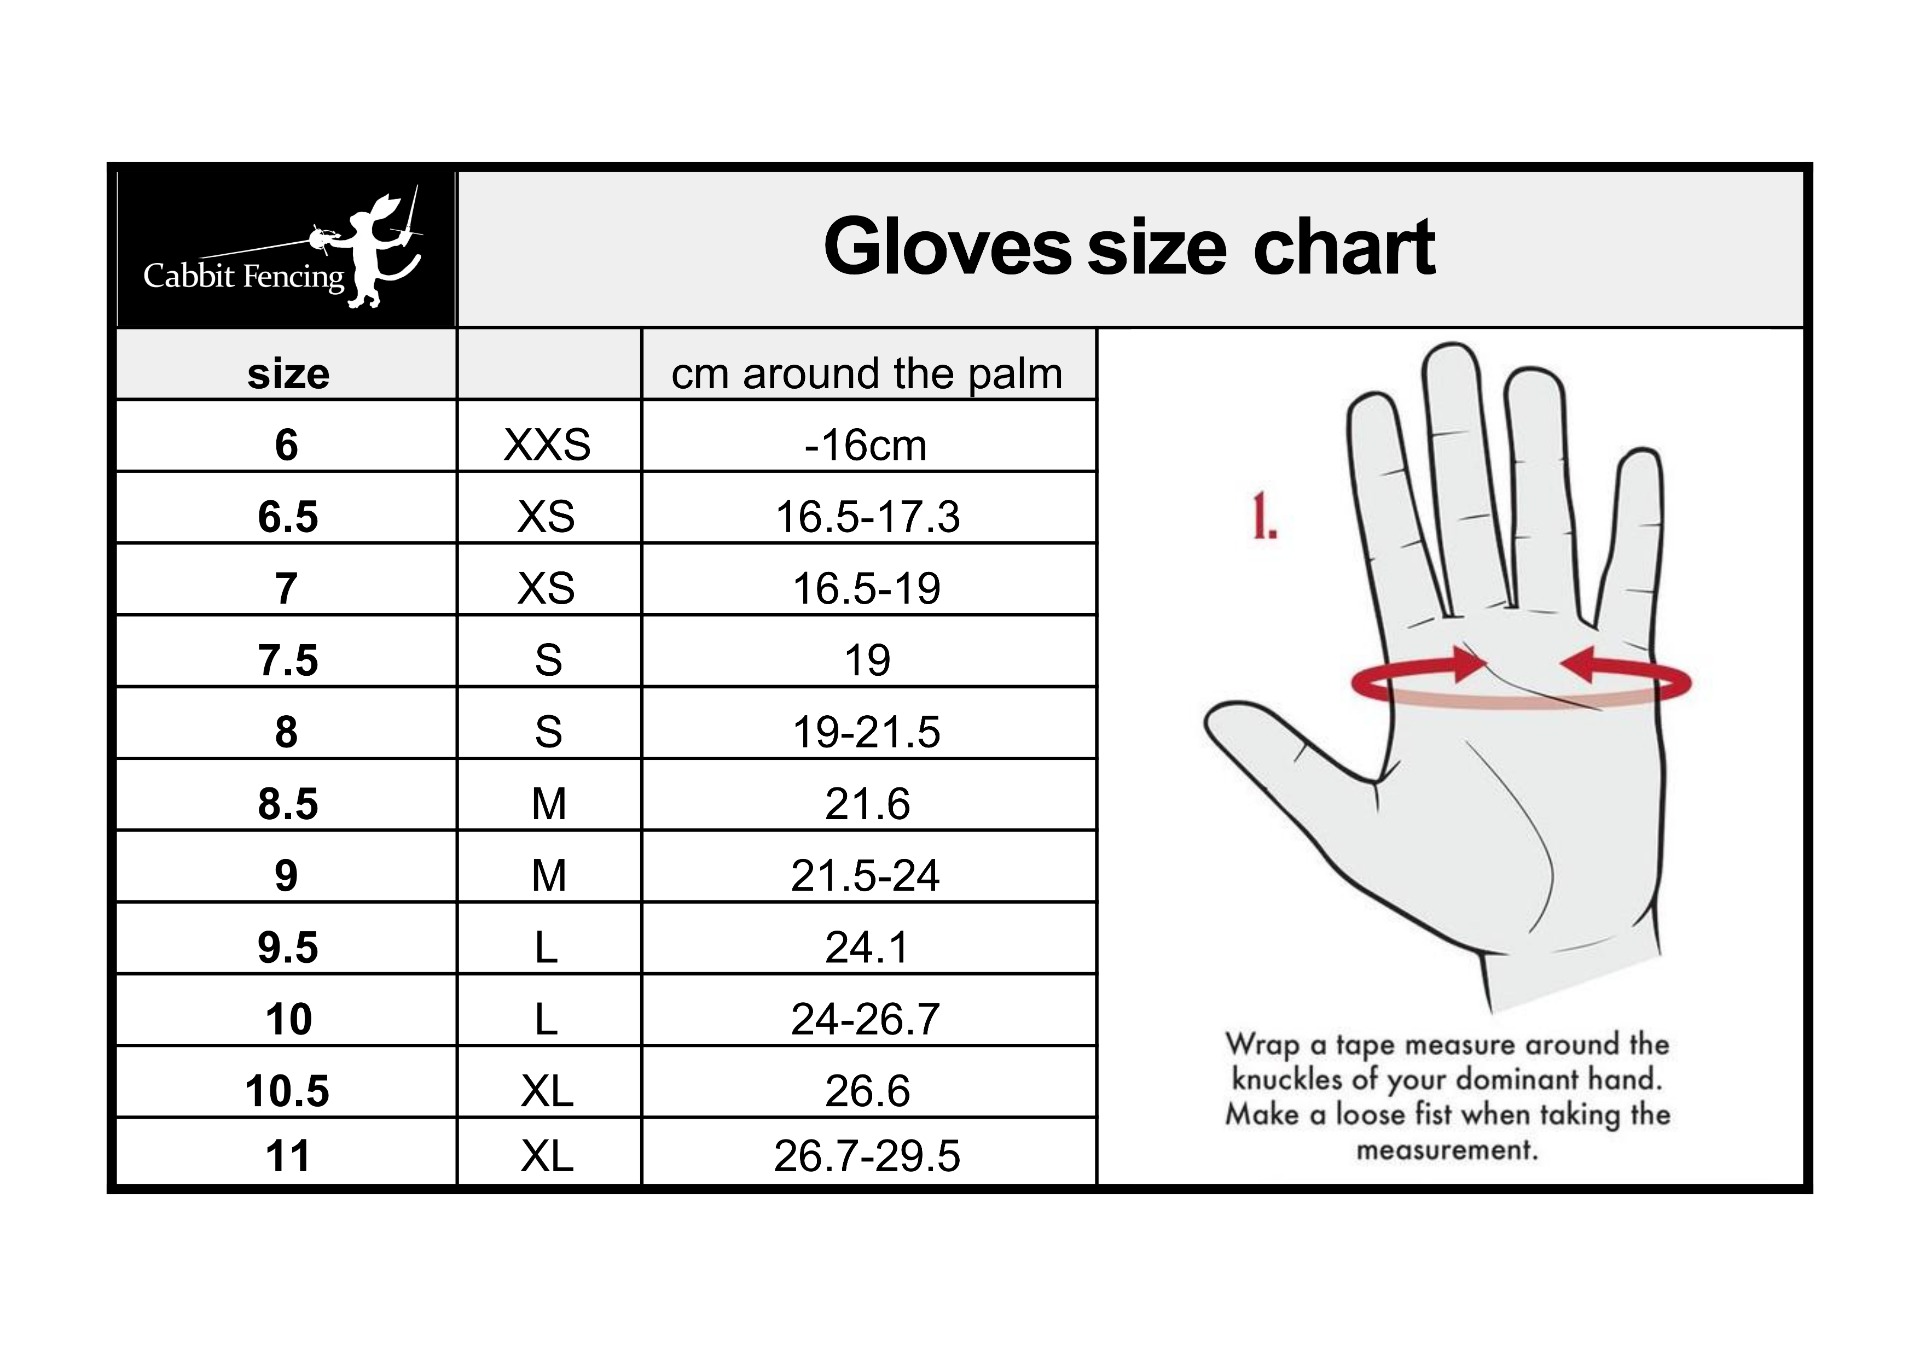 Glove sizes